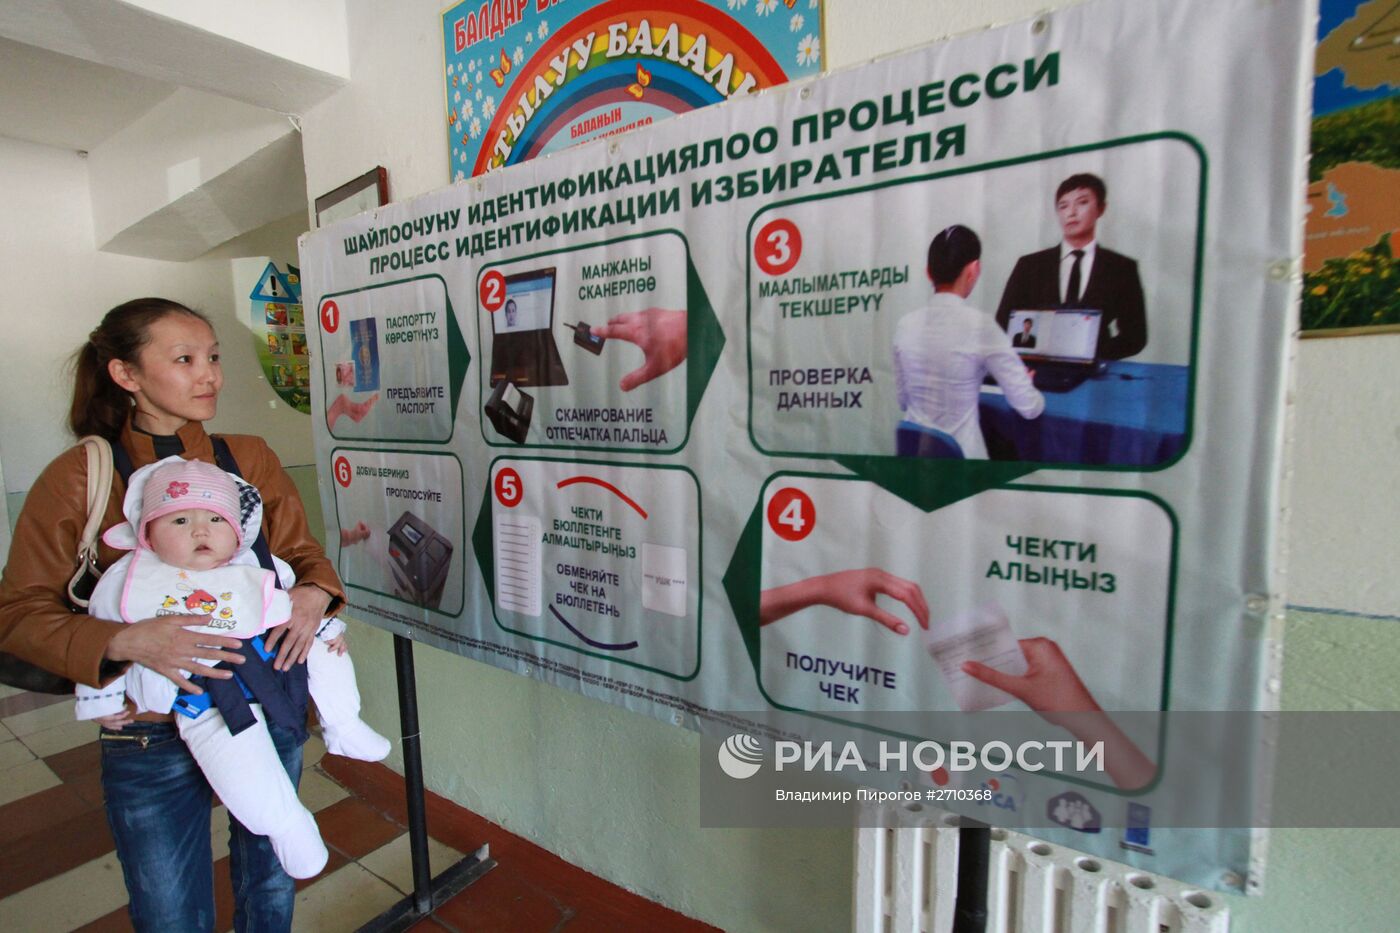 Подготовка к парламентским выборам в Киргизии